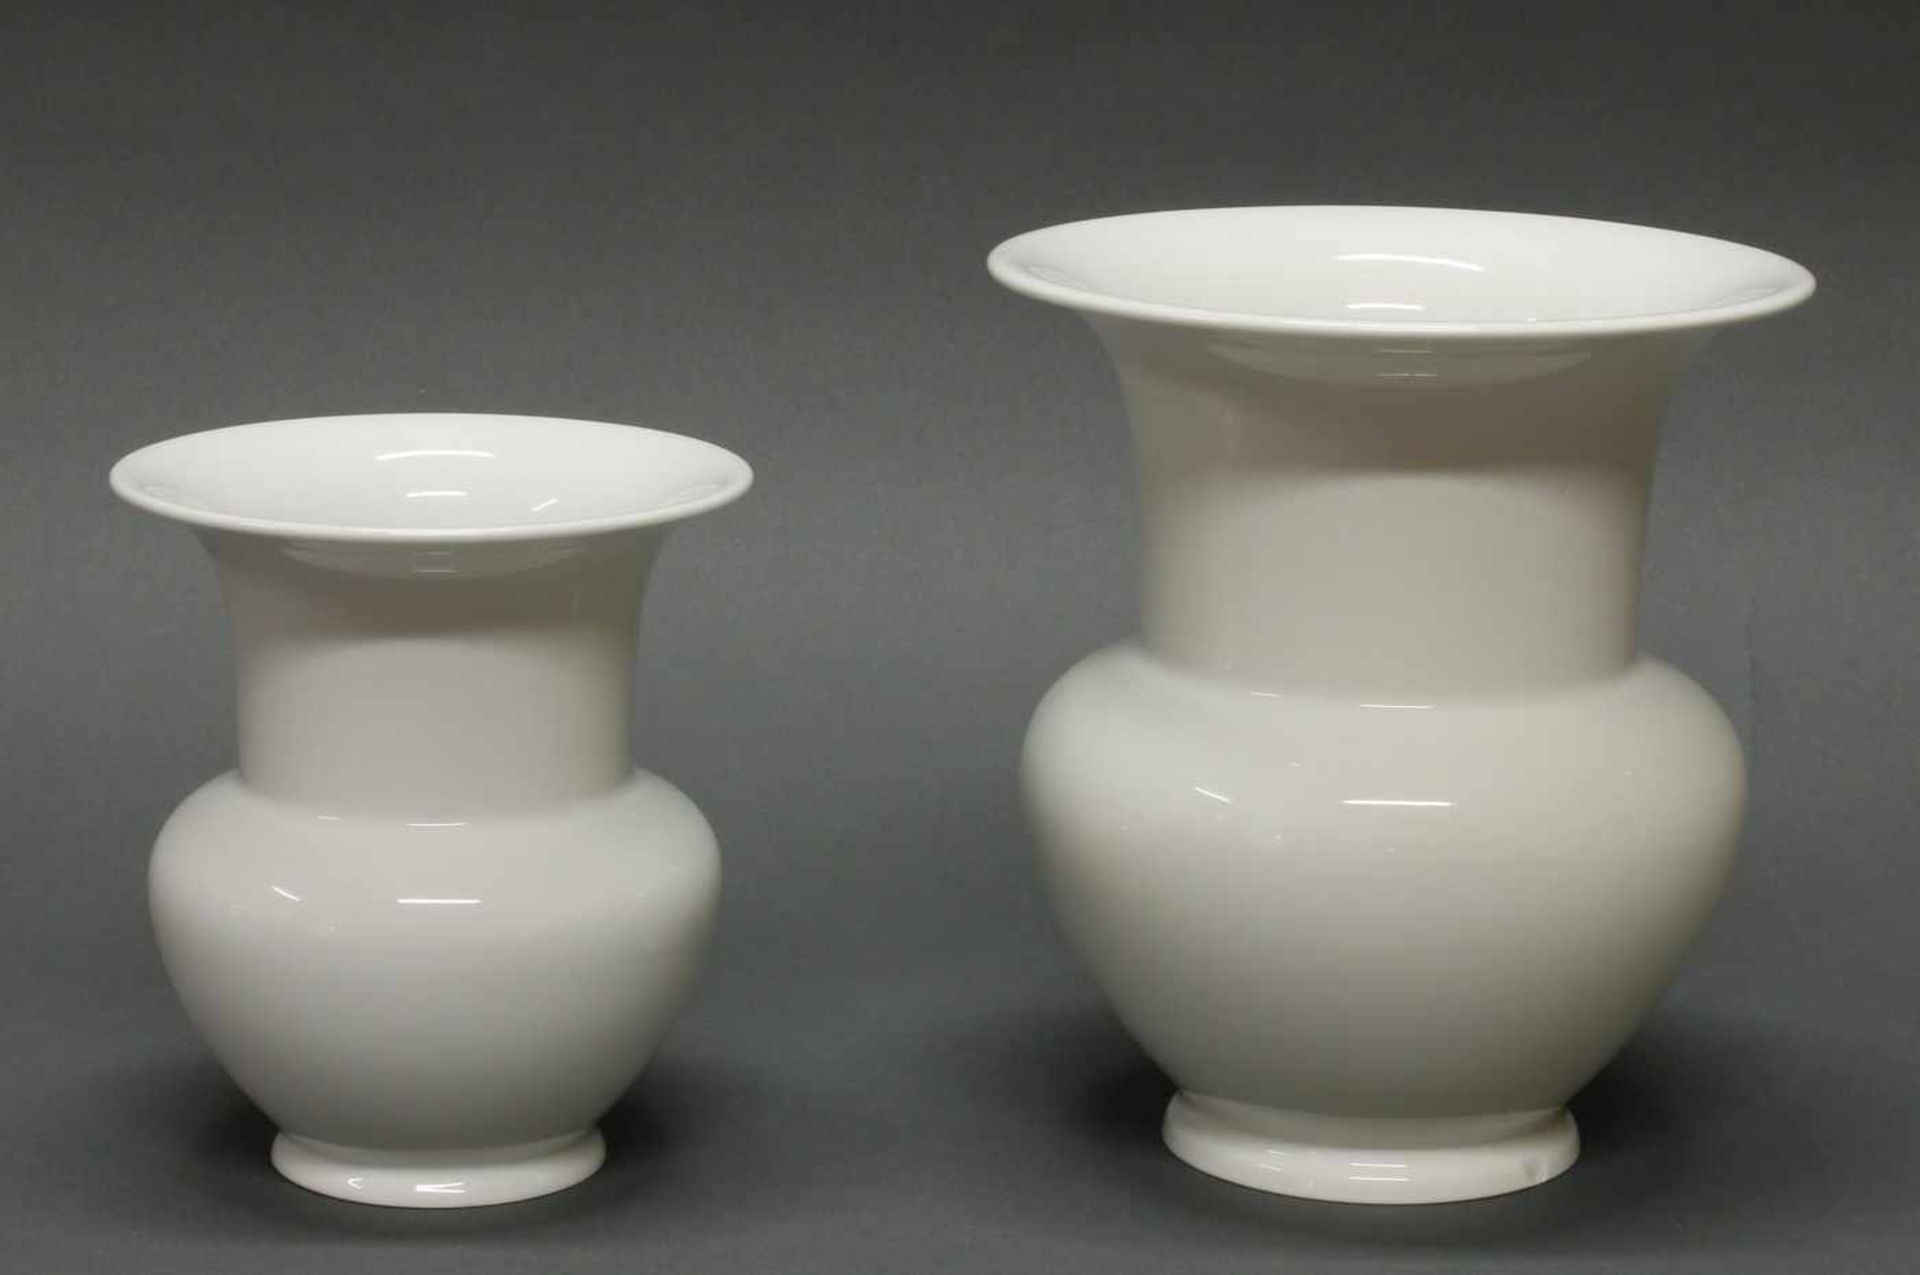 2 Vasen, KPM Berlin, Weißporzellan, 14.5 cm bzw. 19 cm hoch (Stand mit Chip)- - -25.00 % buyer's